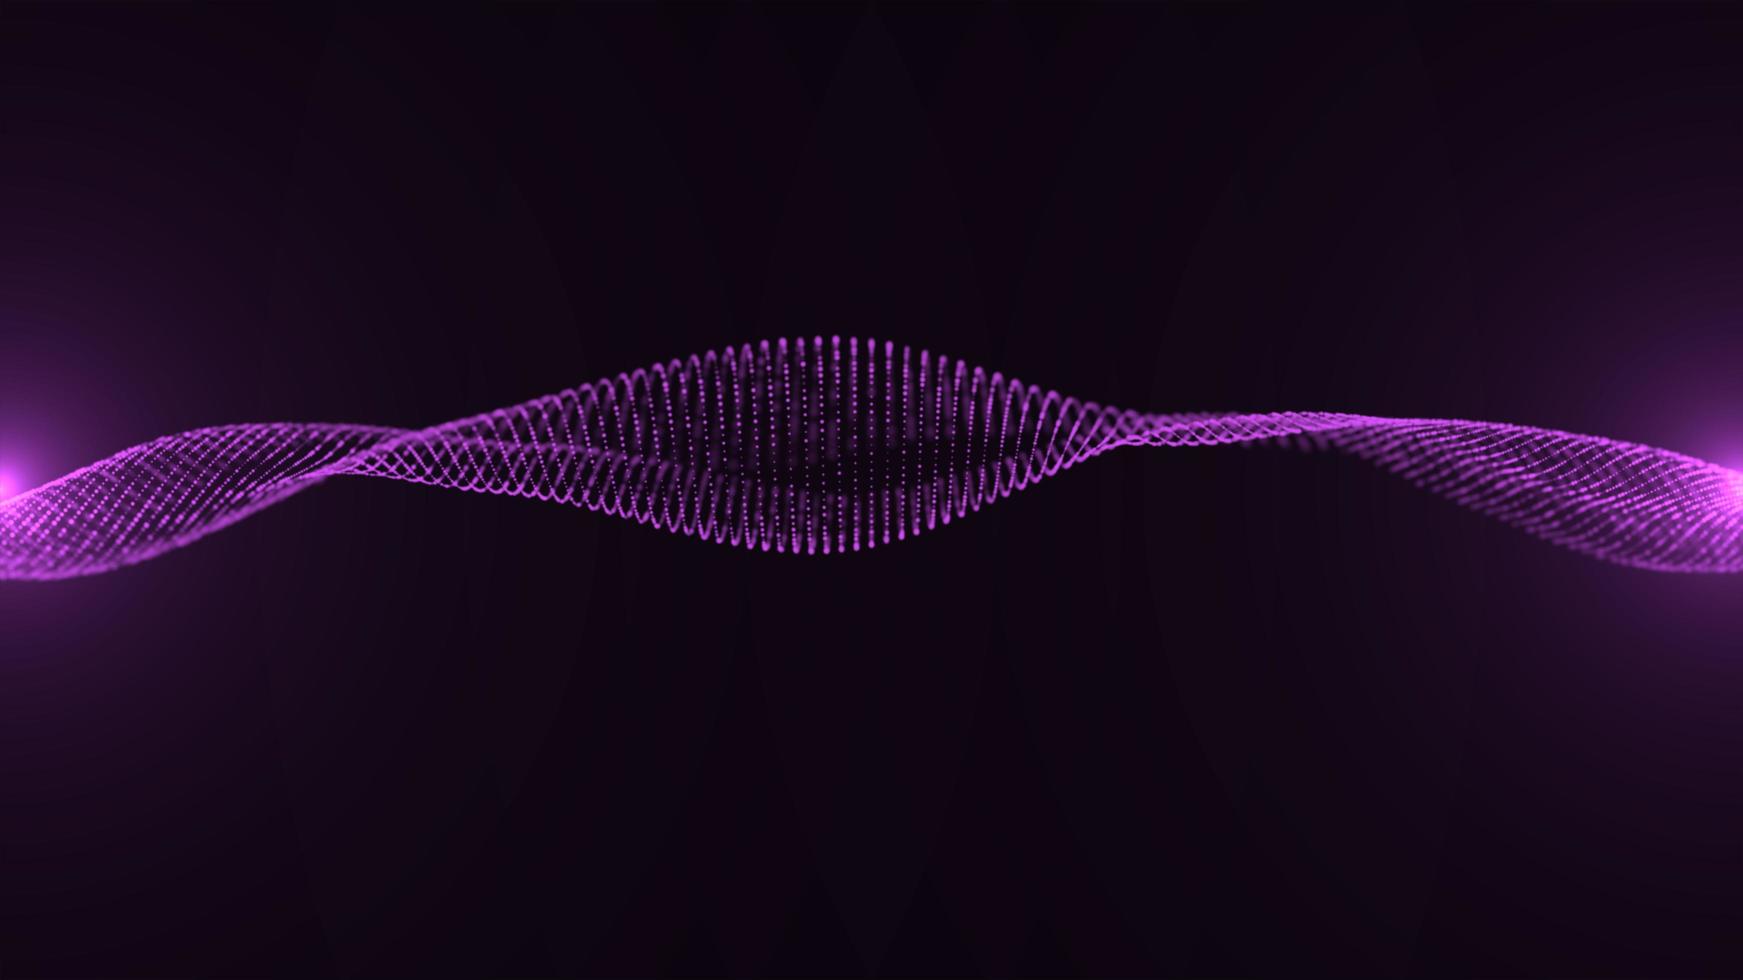 forma de partículas de electricidad púrpura, poder gráfico de neón futurista, ciencia tecnología energía 3d ilustración de elementos de arte abstracto, tecnología inteligencia artificial, papel tapiz temático del ciberespacio de forma foto